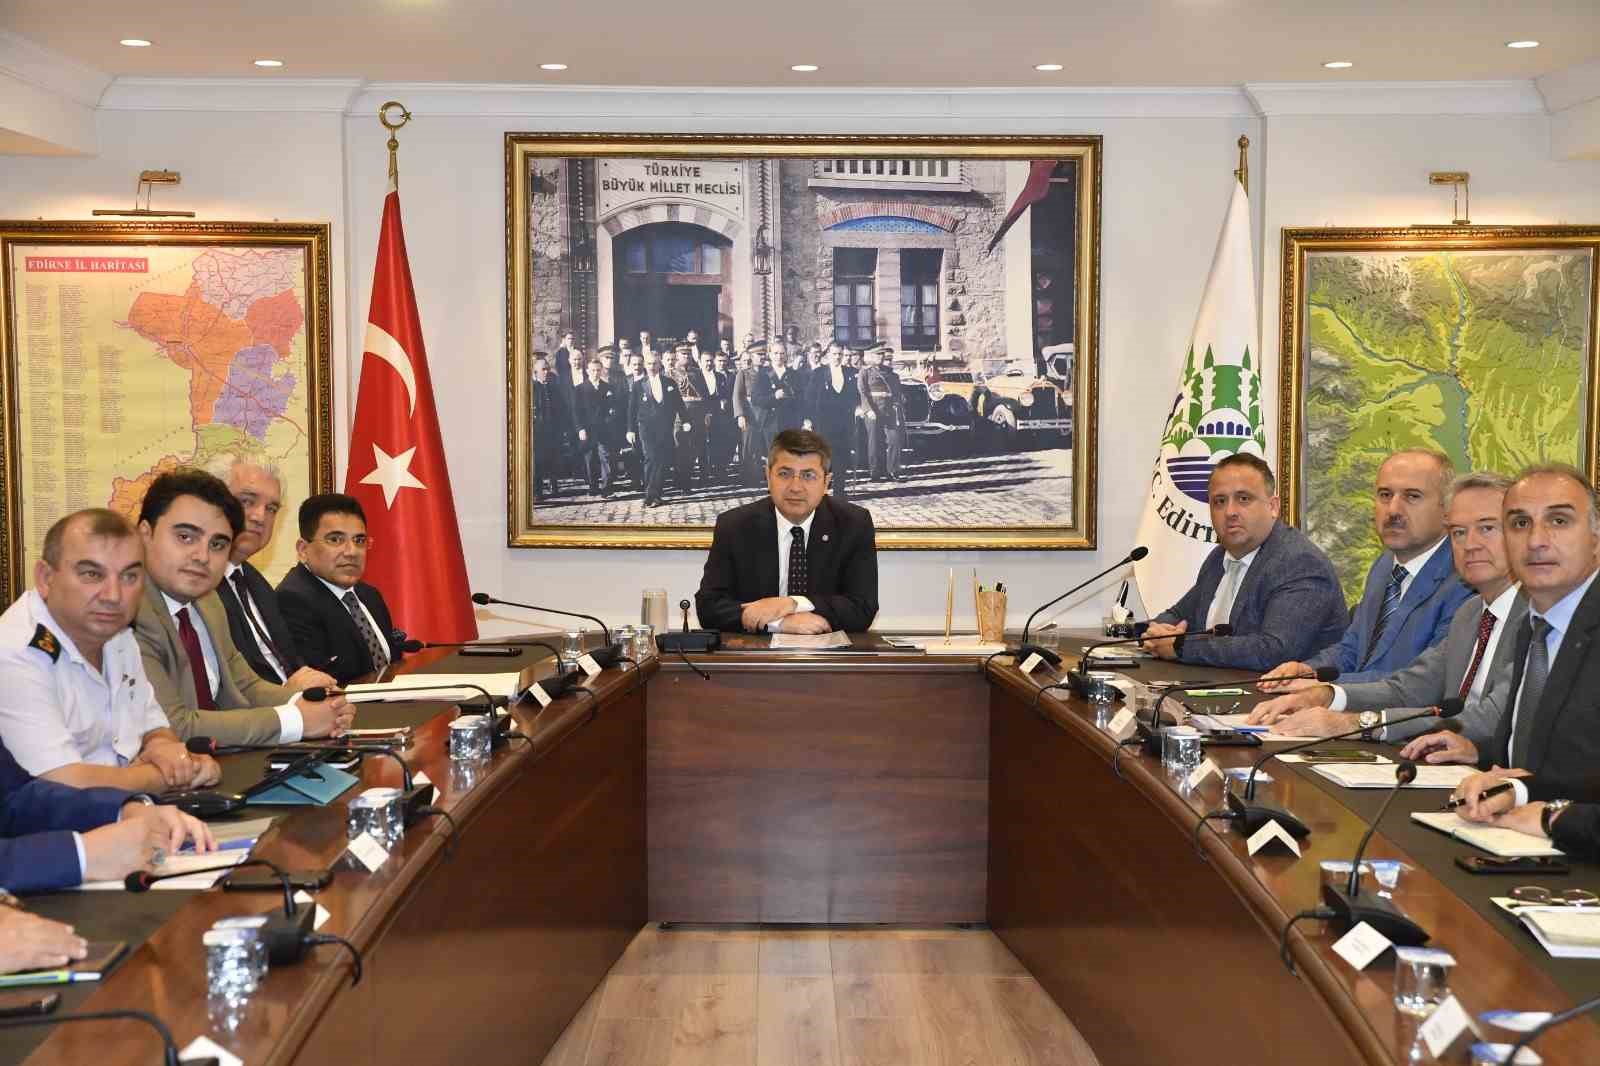 Kırkpınar Toplantısı, Vali Kırbıyık Başkanlığında Yapıldı